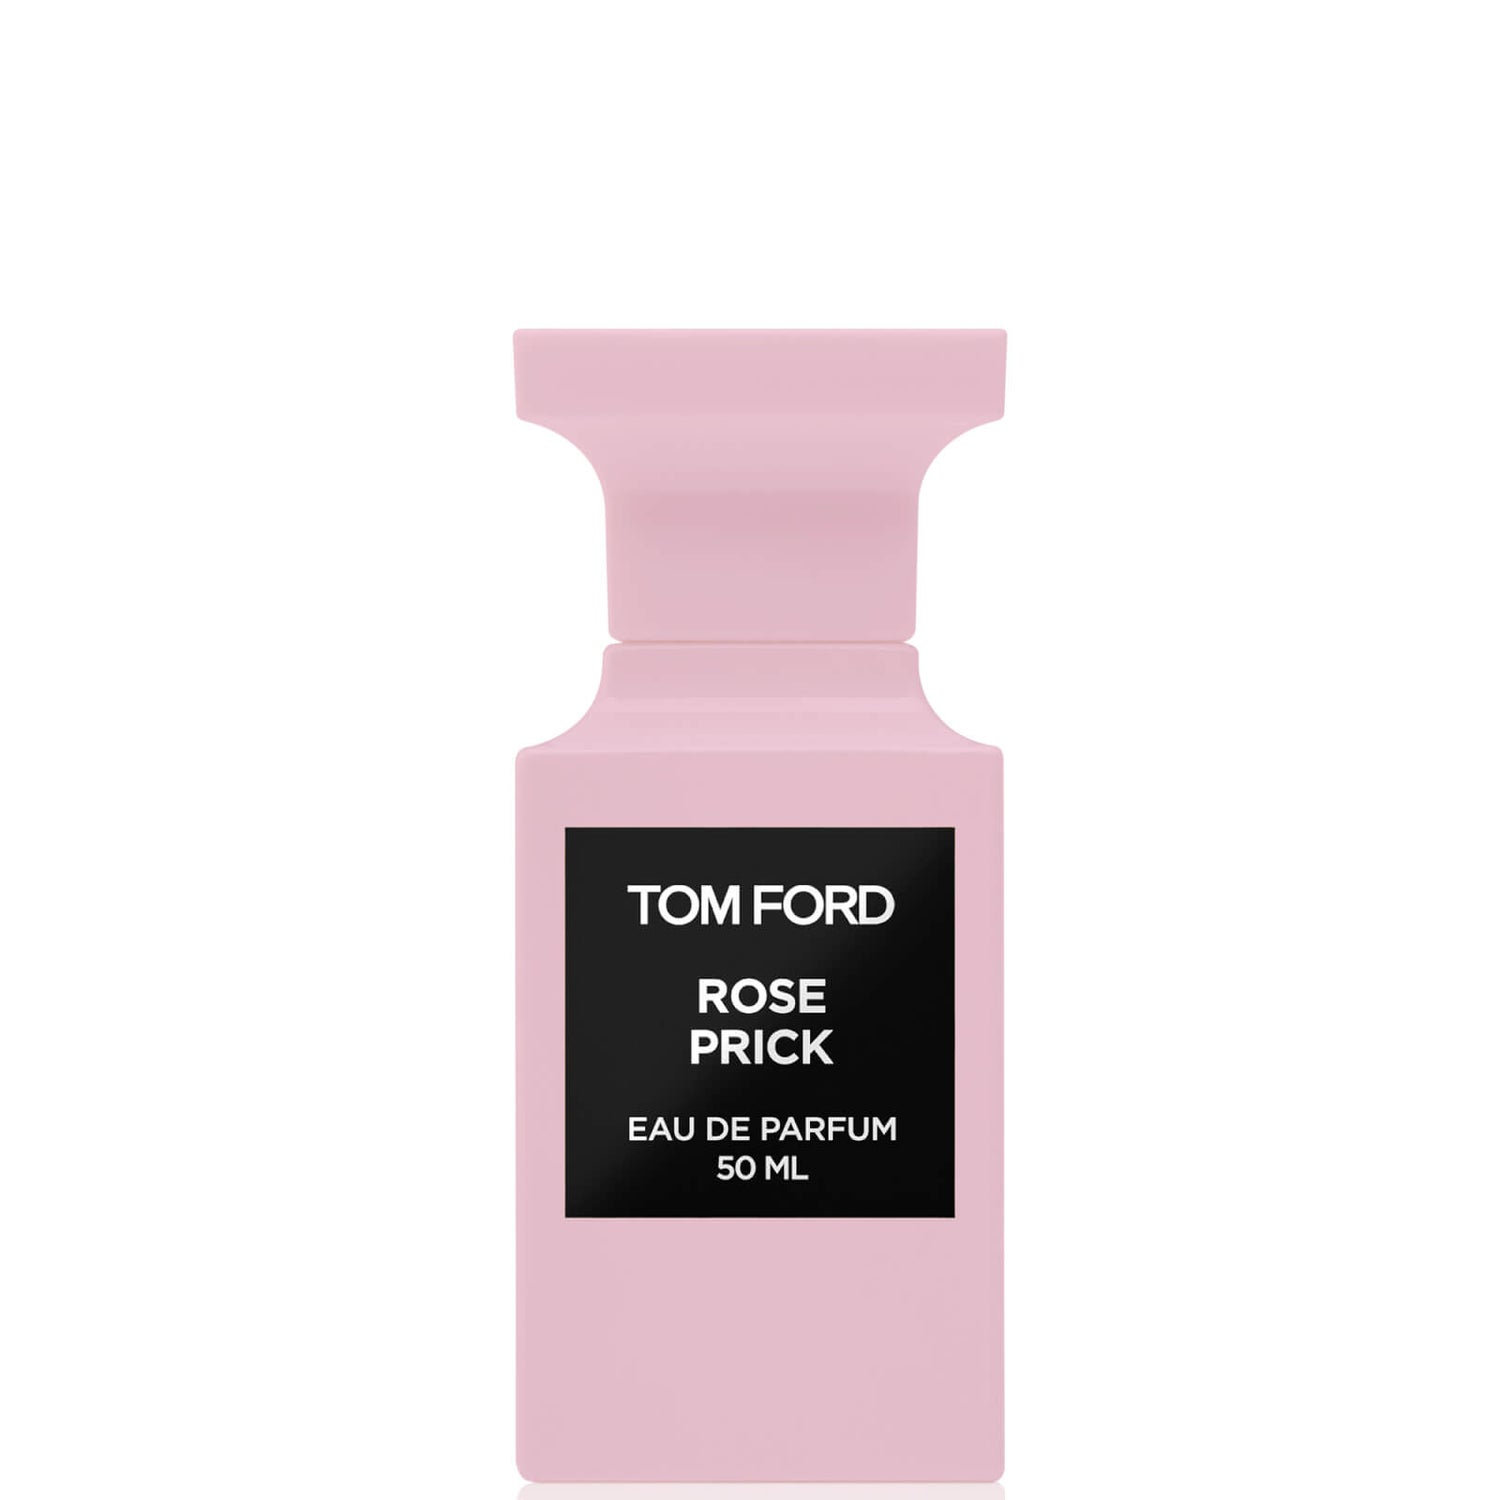 Tom Ford Rose Prick Eau de Parfum Spray - 50 ml